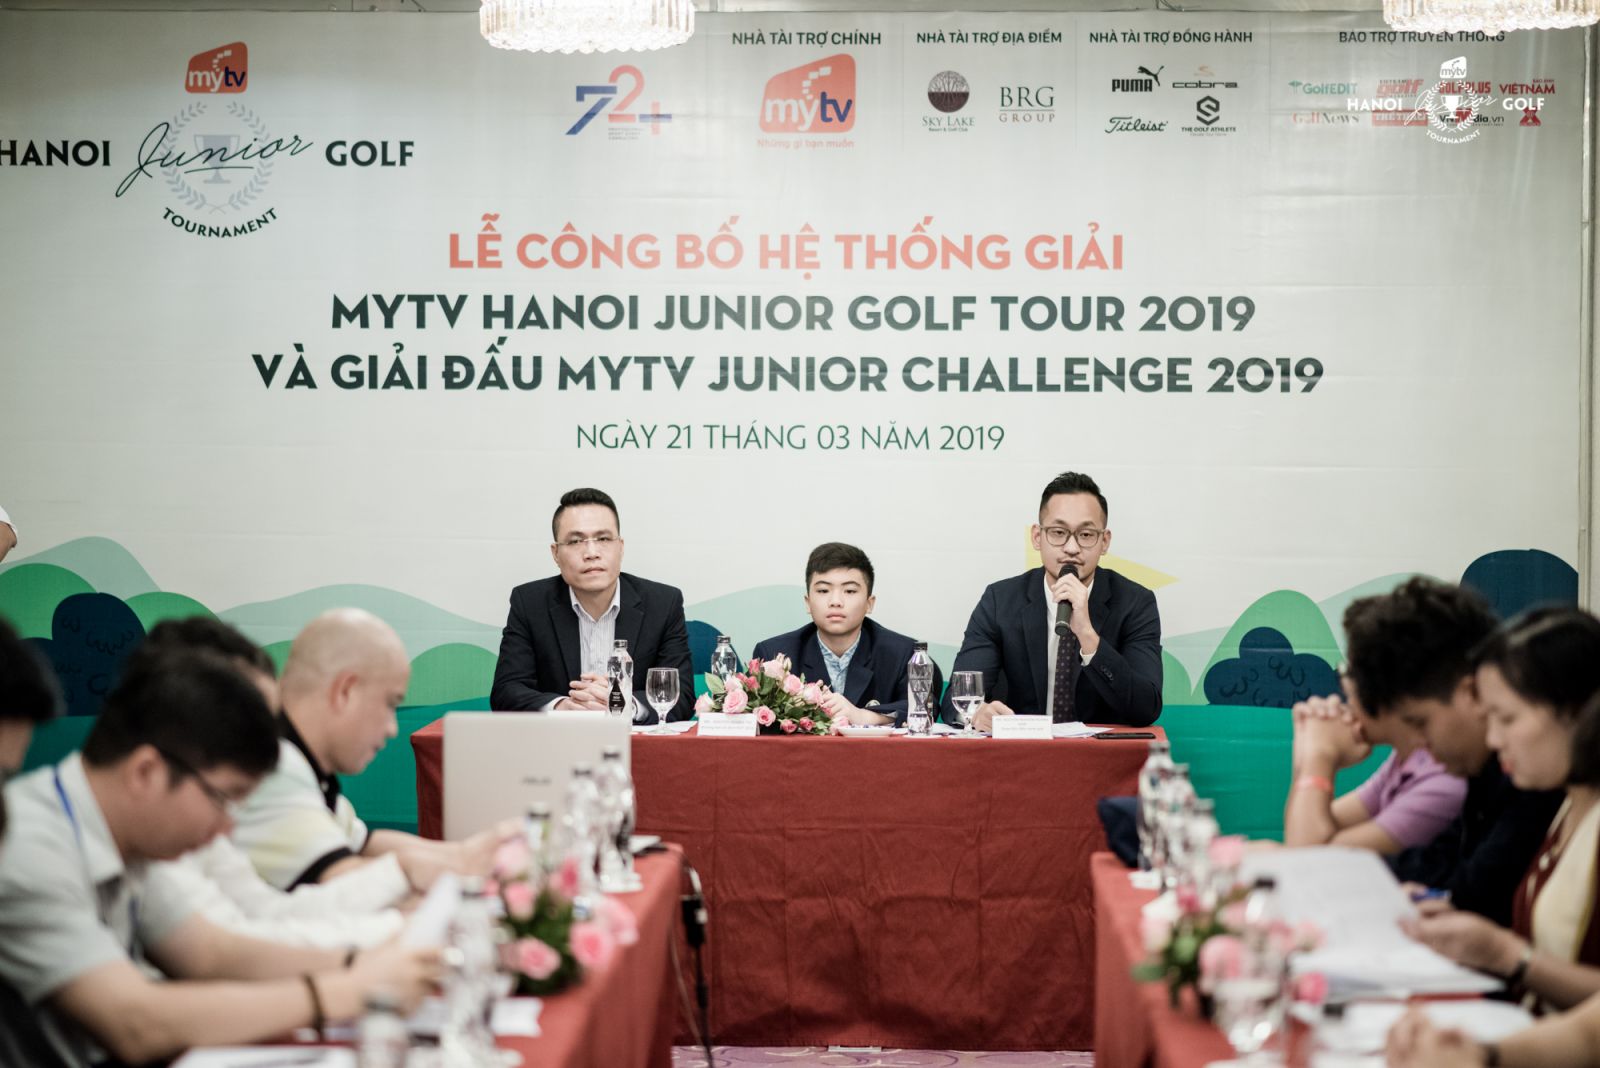 Hệ thống giải Trẻ MyTV Hanoi Junior Golf Tour nâng tầm quy mô tổ chức